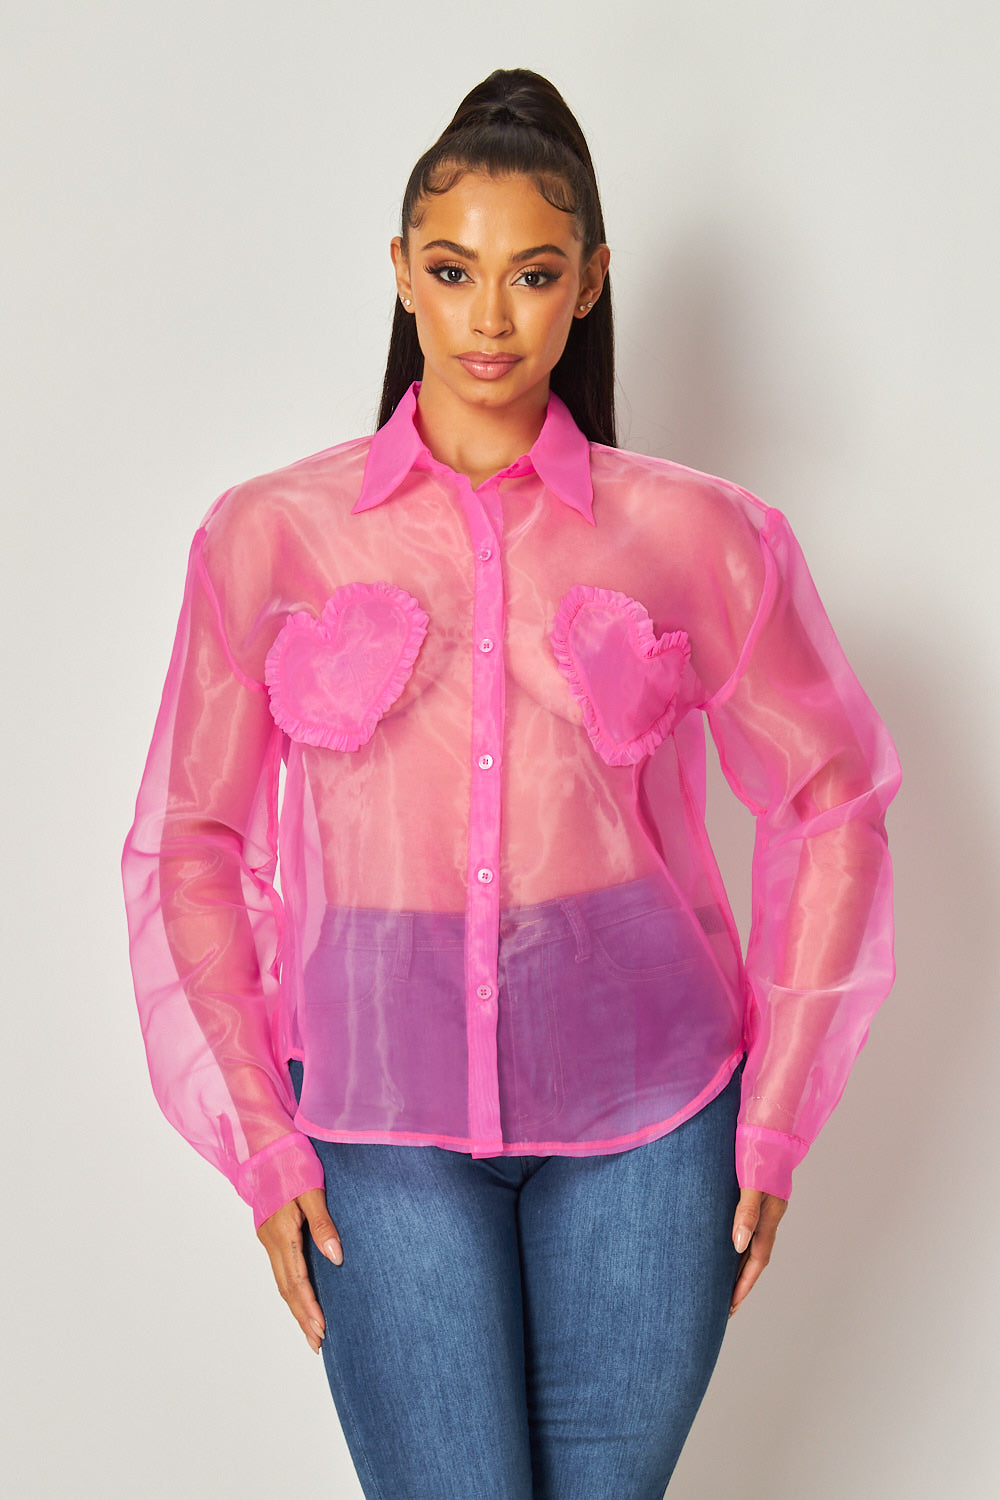 Blushing Hearts Organza Patch Button Up Shirt